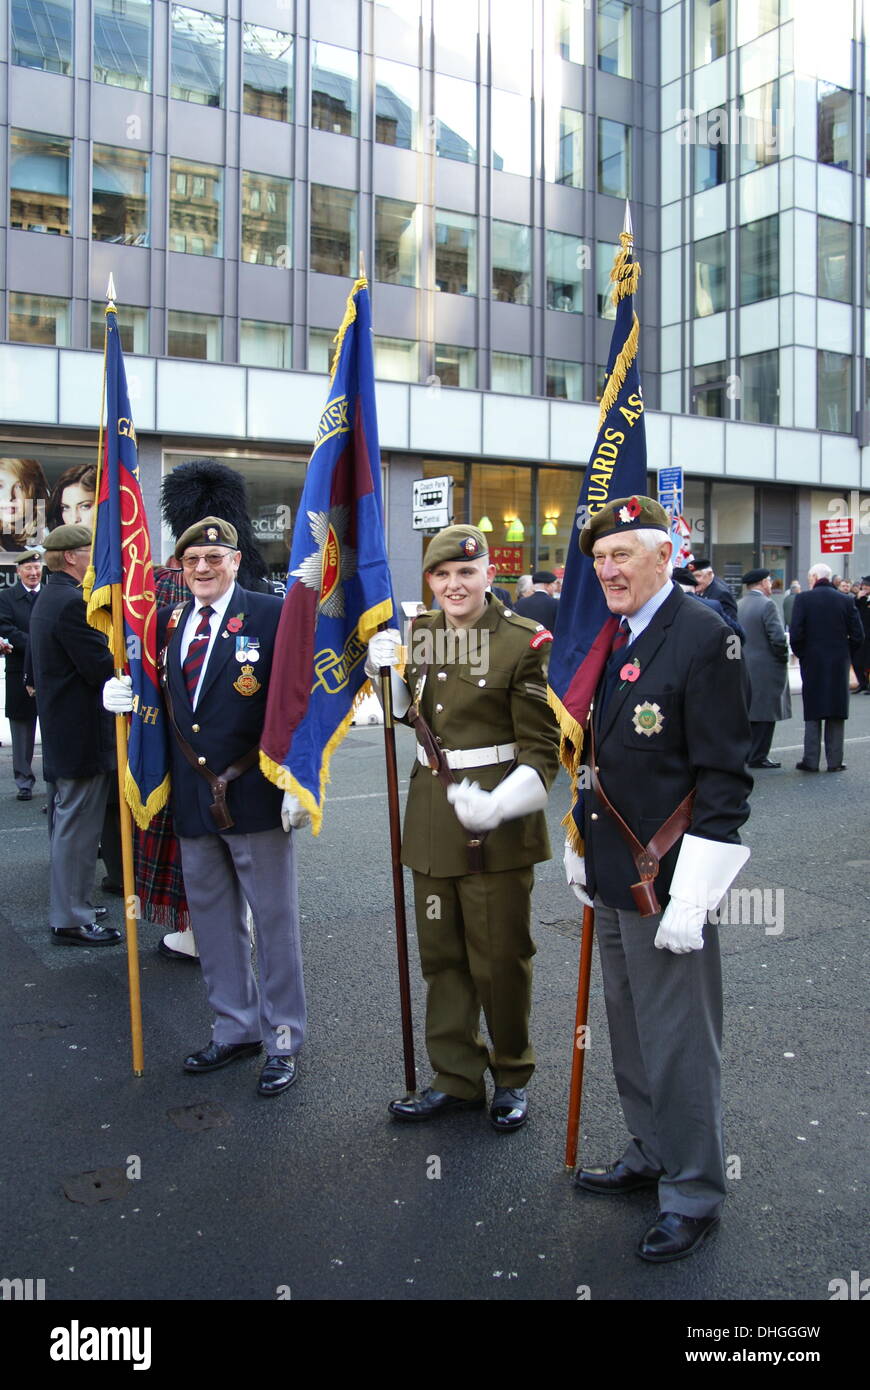 Kriegsveteranen posieren für ein Foto vor der Erinnerung-Parade in Manchester UK, Sonntag, 10. November 2013 Stockfoto